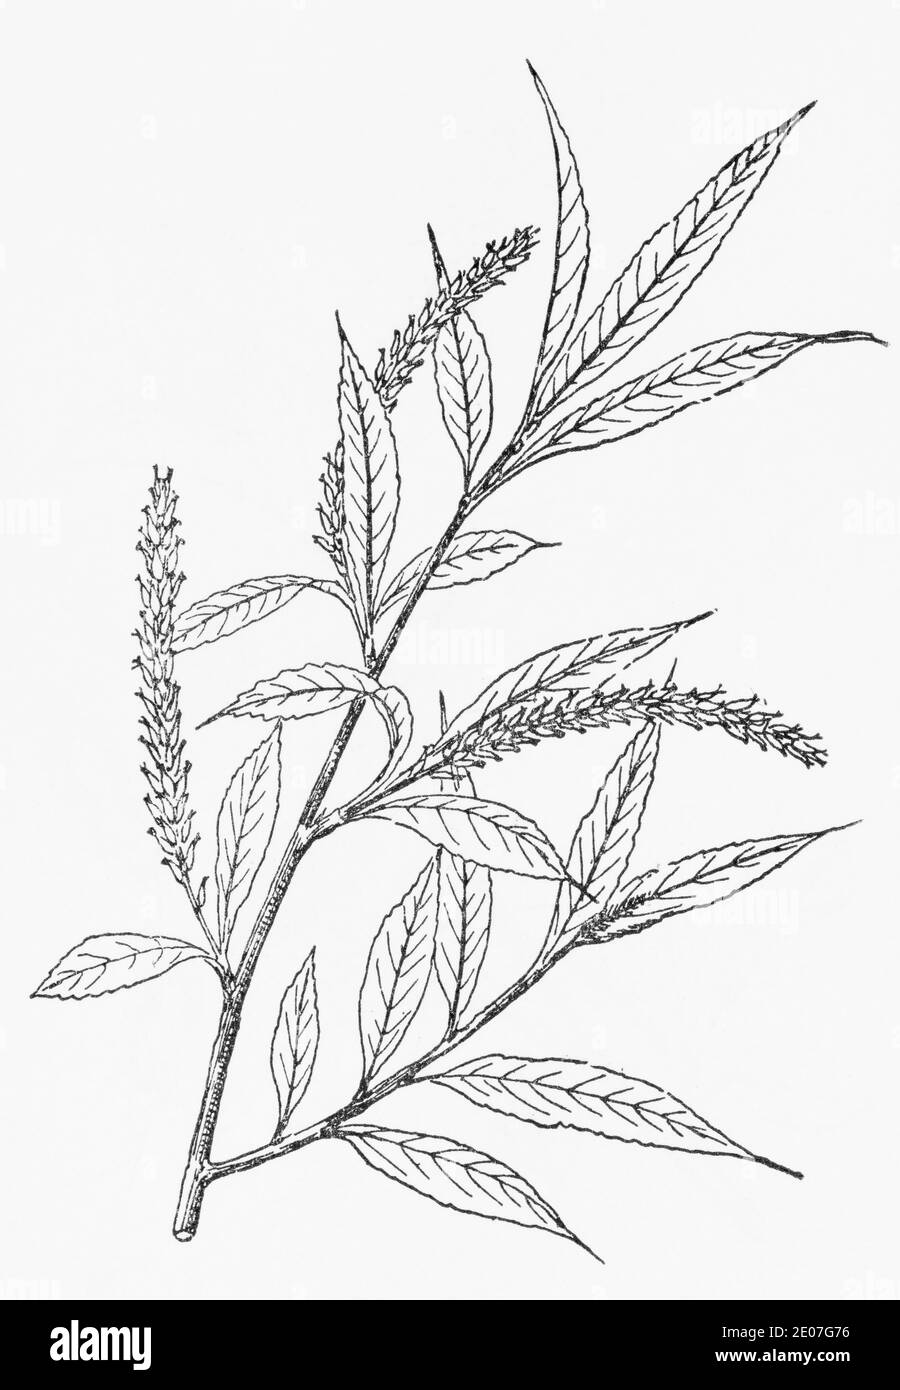 Alte botanische Illustration Gravur von Weißer Weide / Salix alba. Traditionelle Heilkräuter Pflanze. Siehe Hinweise Stockfoto